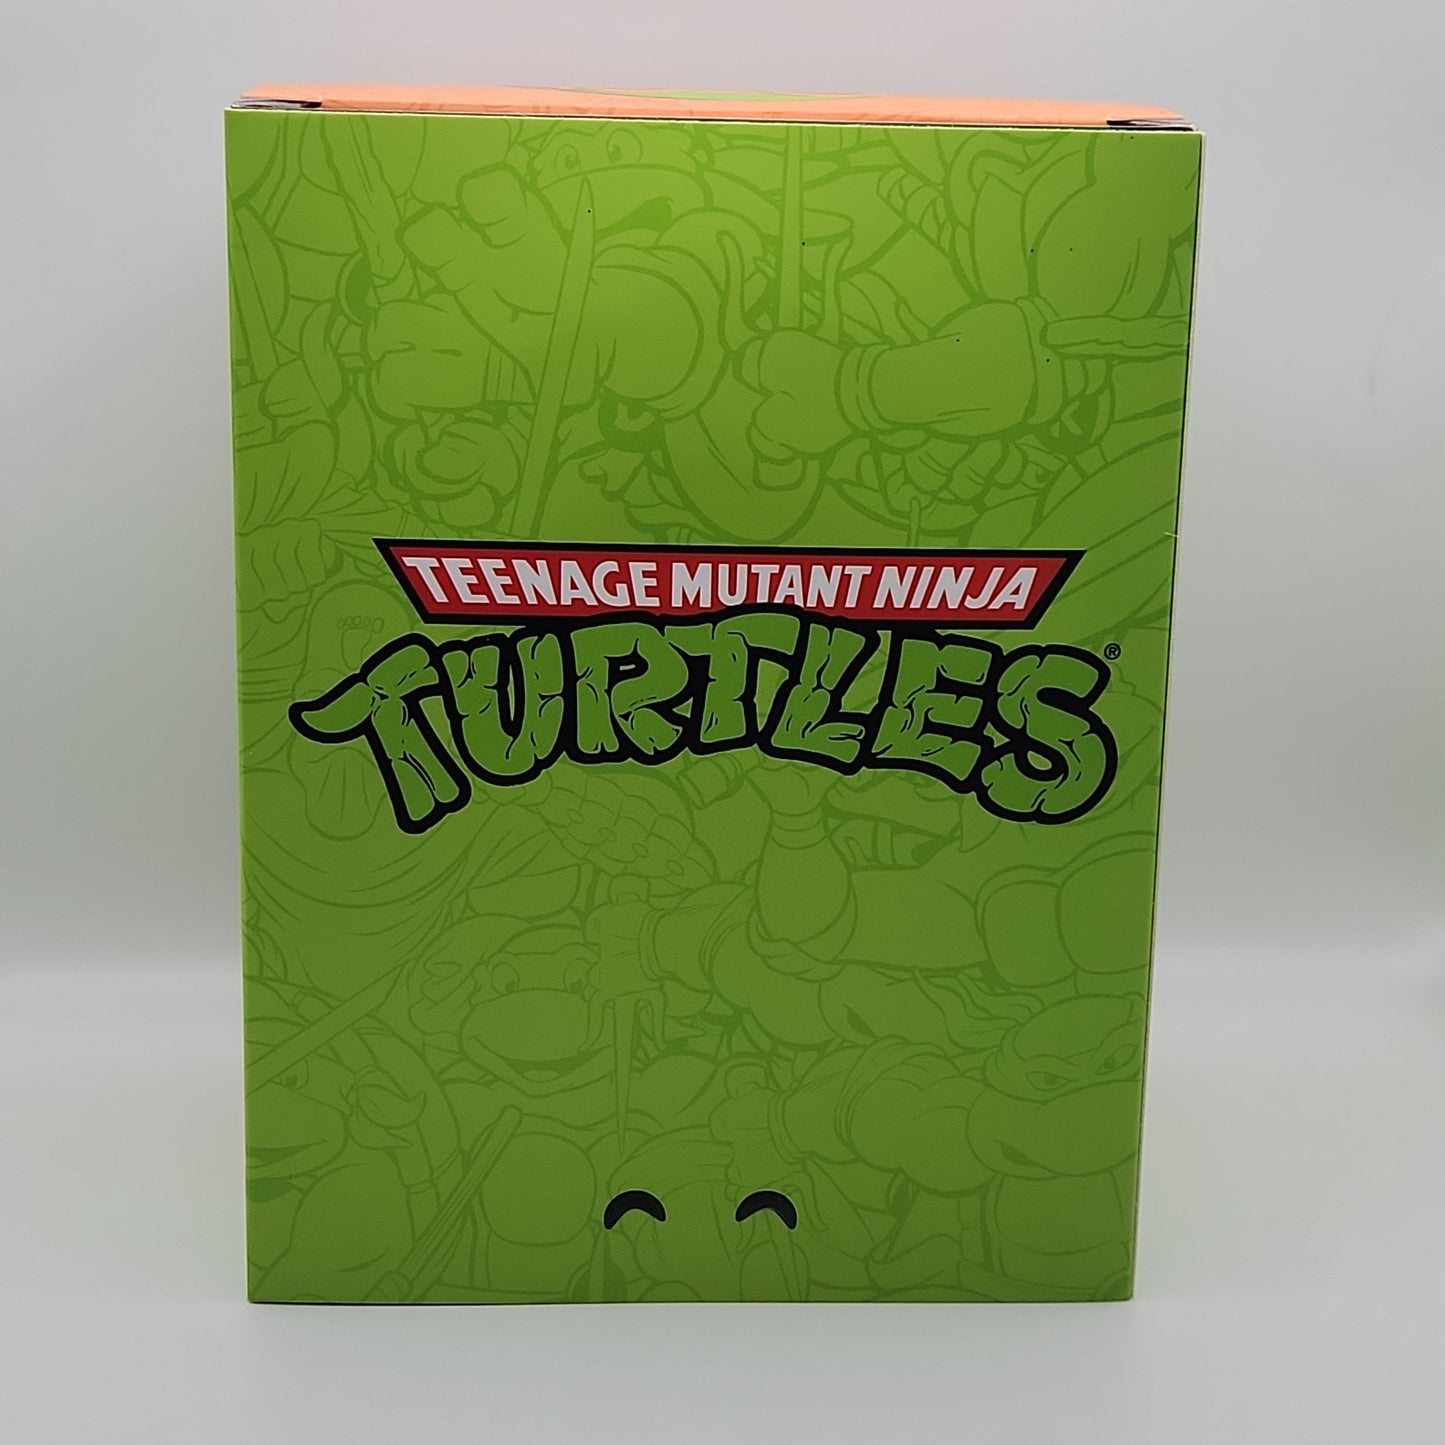 YouTooz- Teenage Mutant Ninja Turtles: Michelangelo